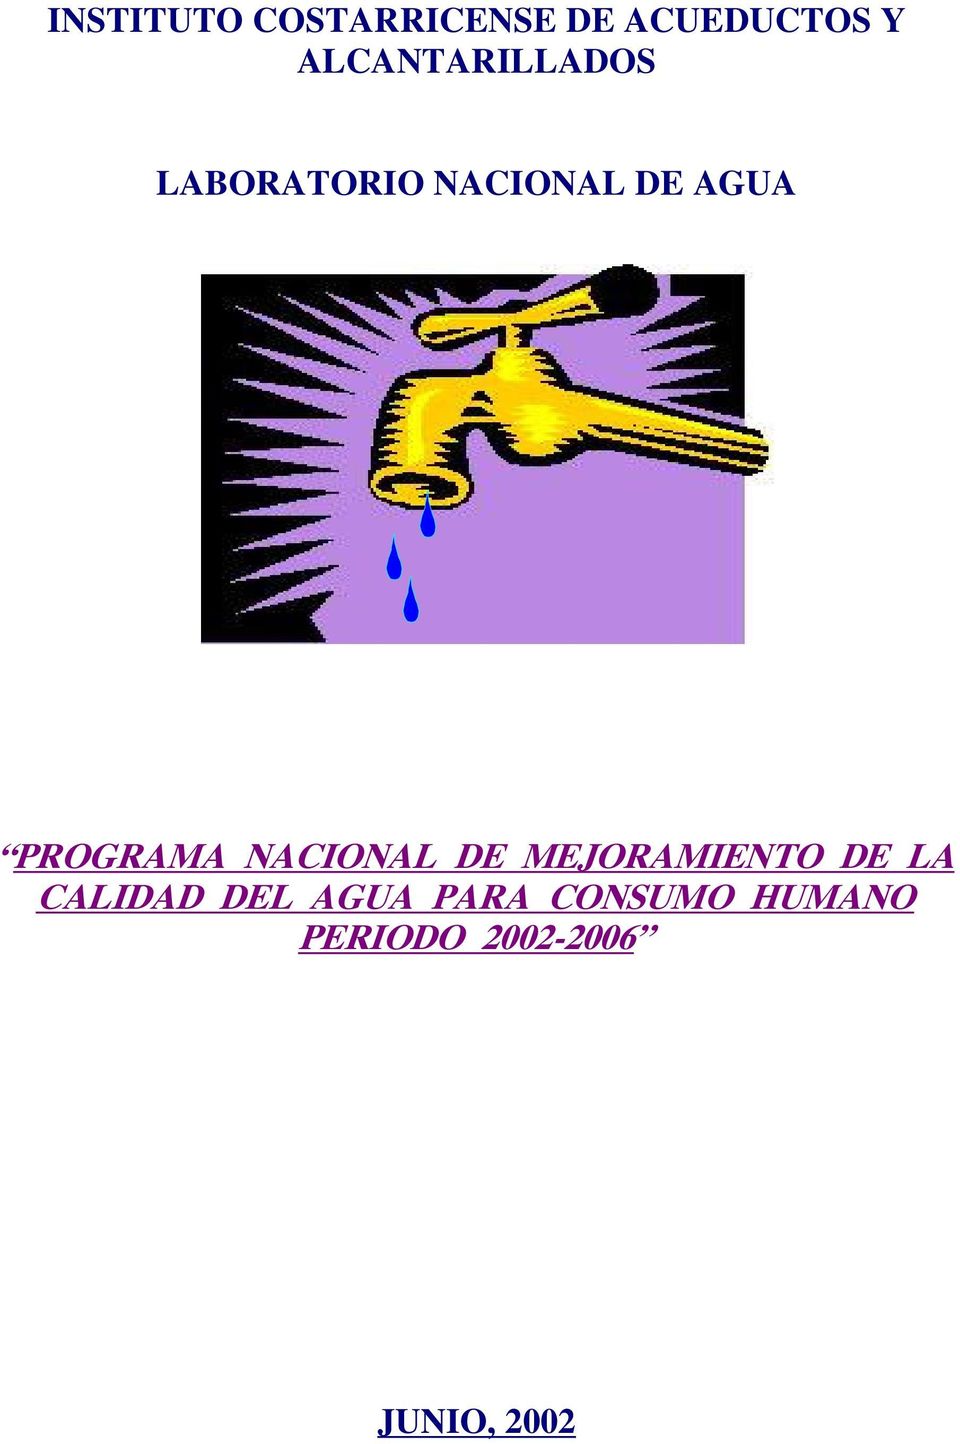 PROGRAMA NACIONAL DE MEJORAMIENTO DE LA CALIDAD